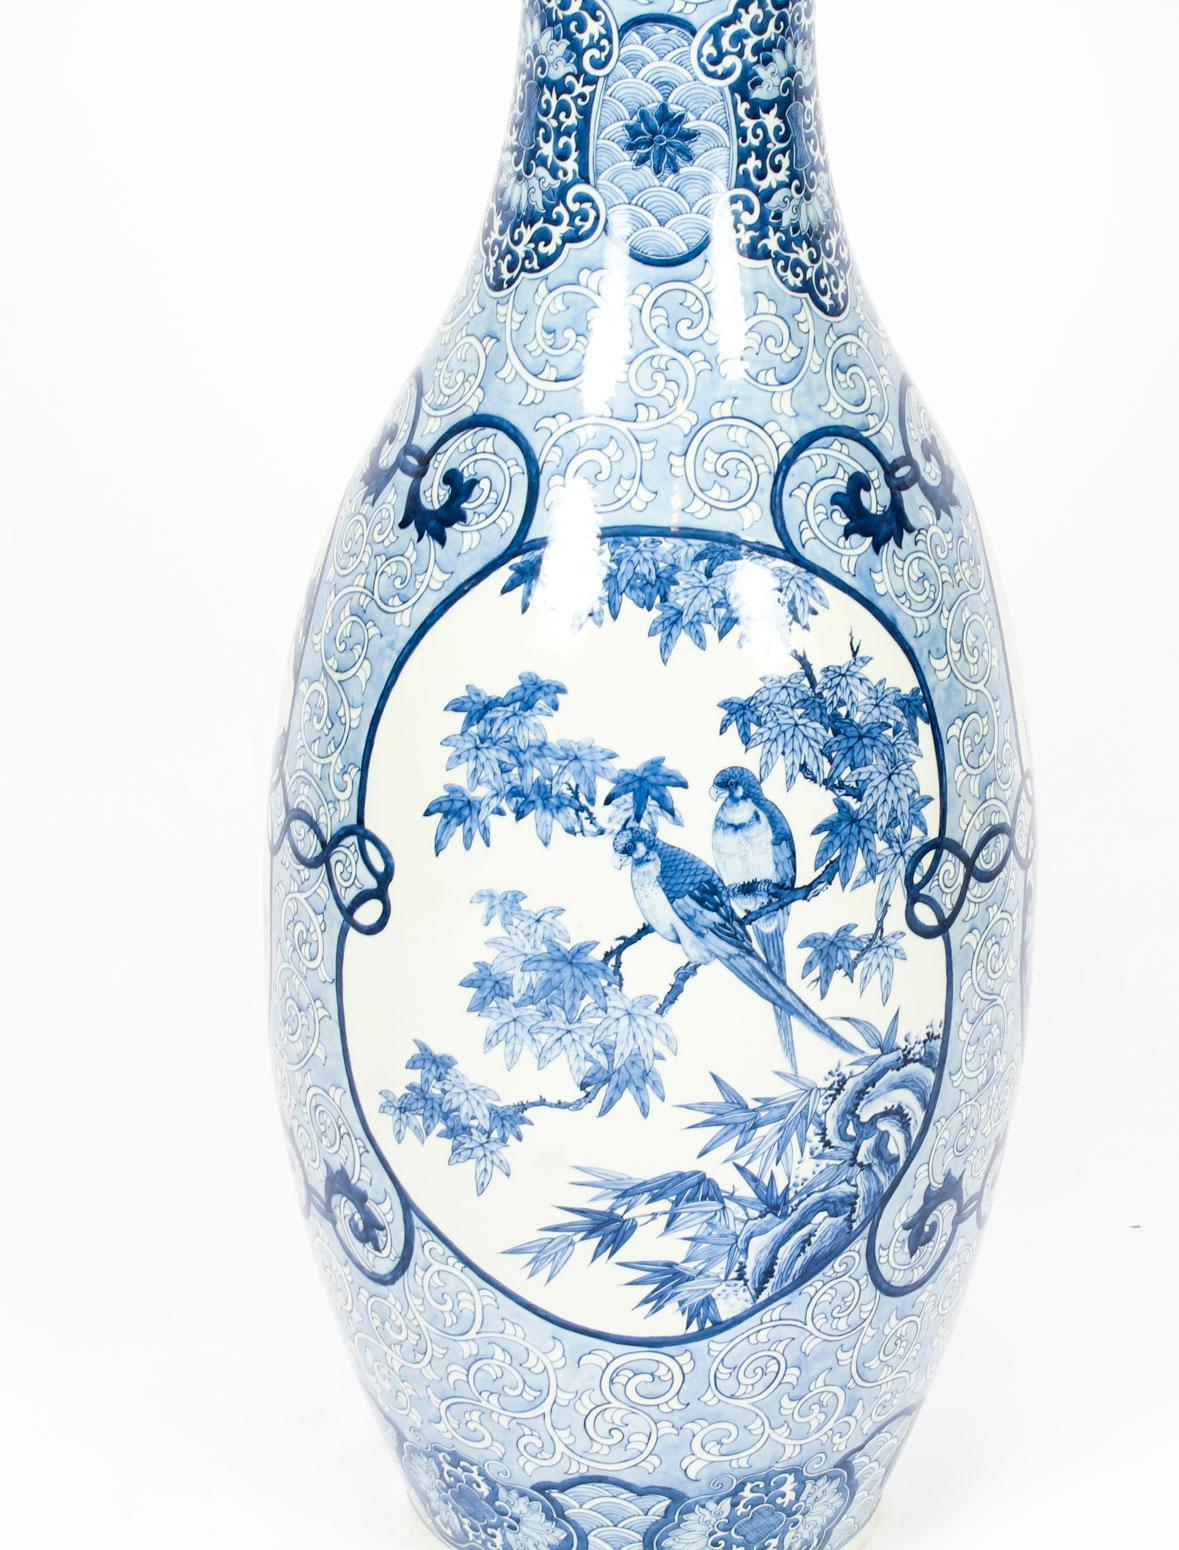 japanese arita porcelain vase